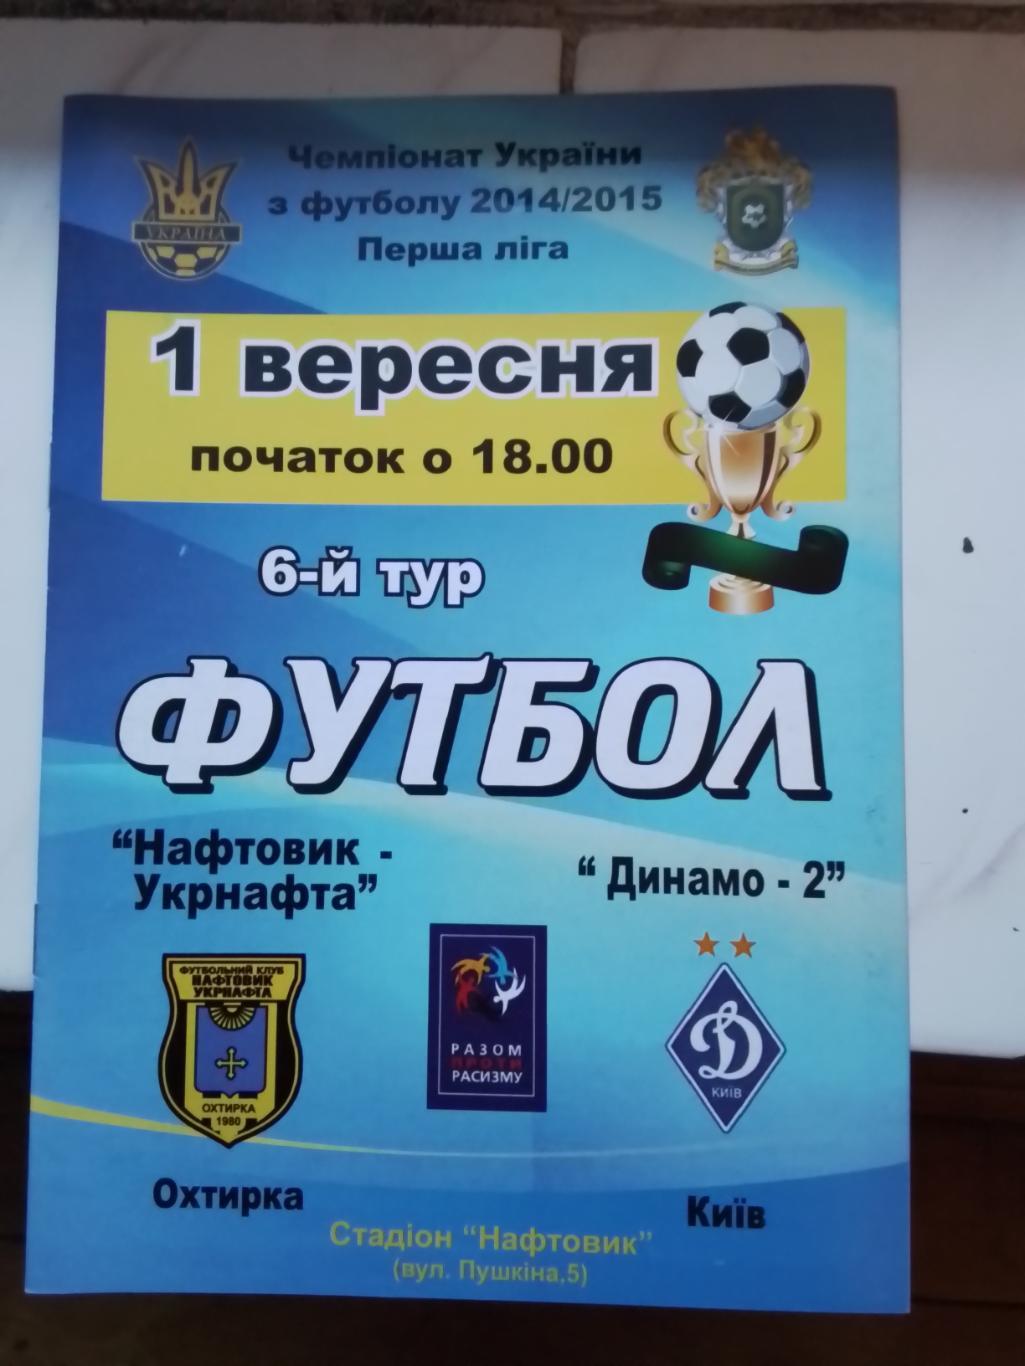 Нефтяник-Укрнефть Ахтырка - Динамо-2 Киев 2014 - 2015